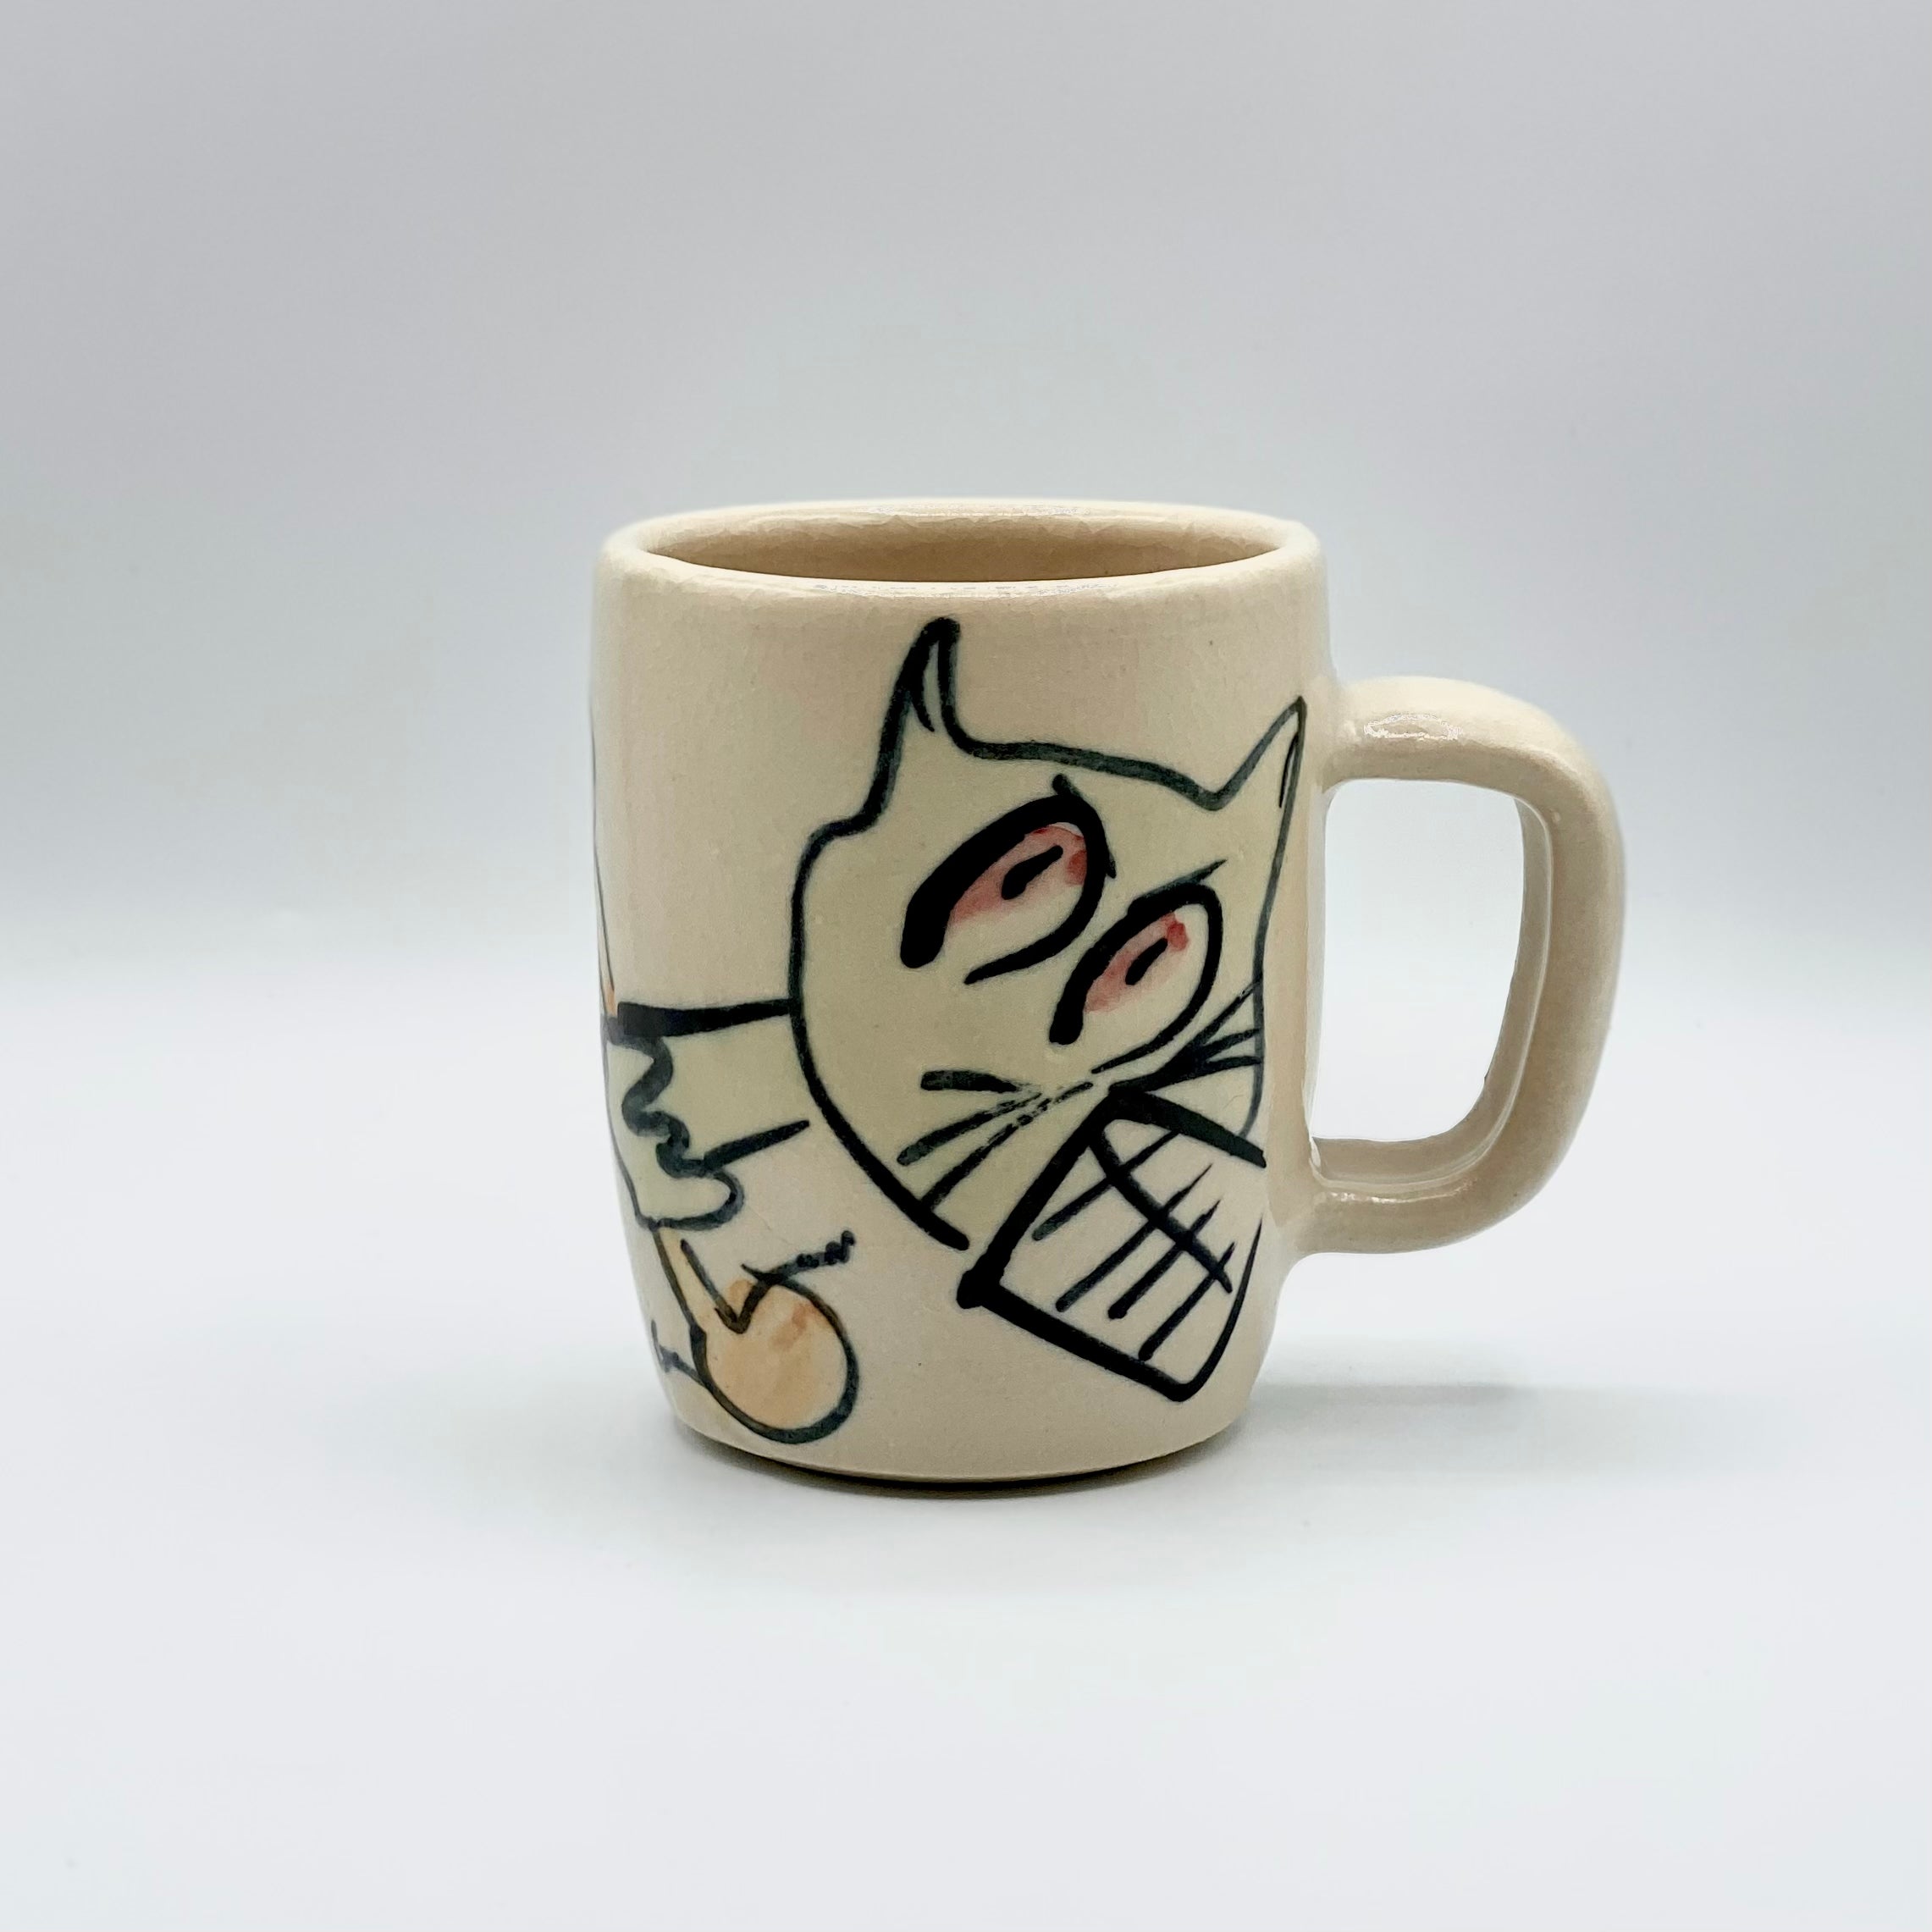 Whimsical Mug by MNO Clay